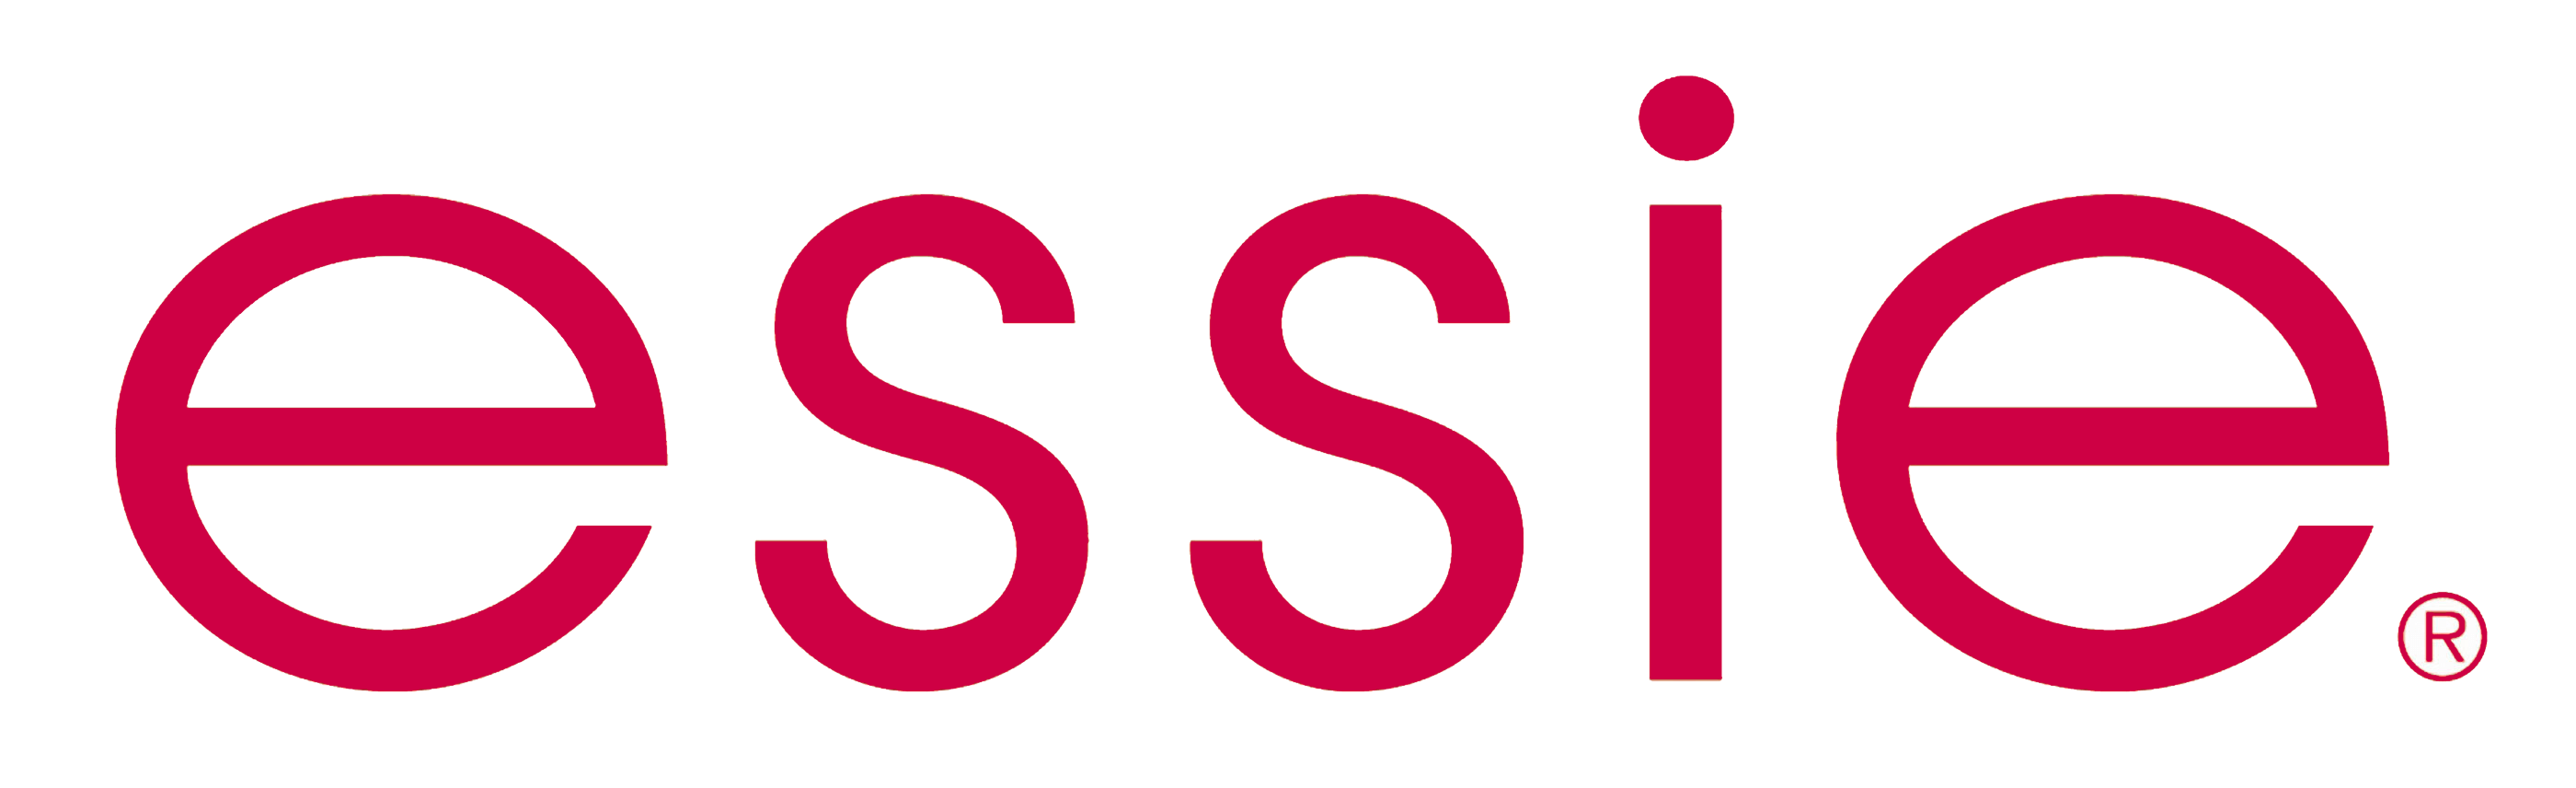 Essie Logo - Essie